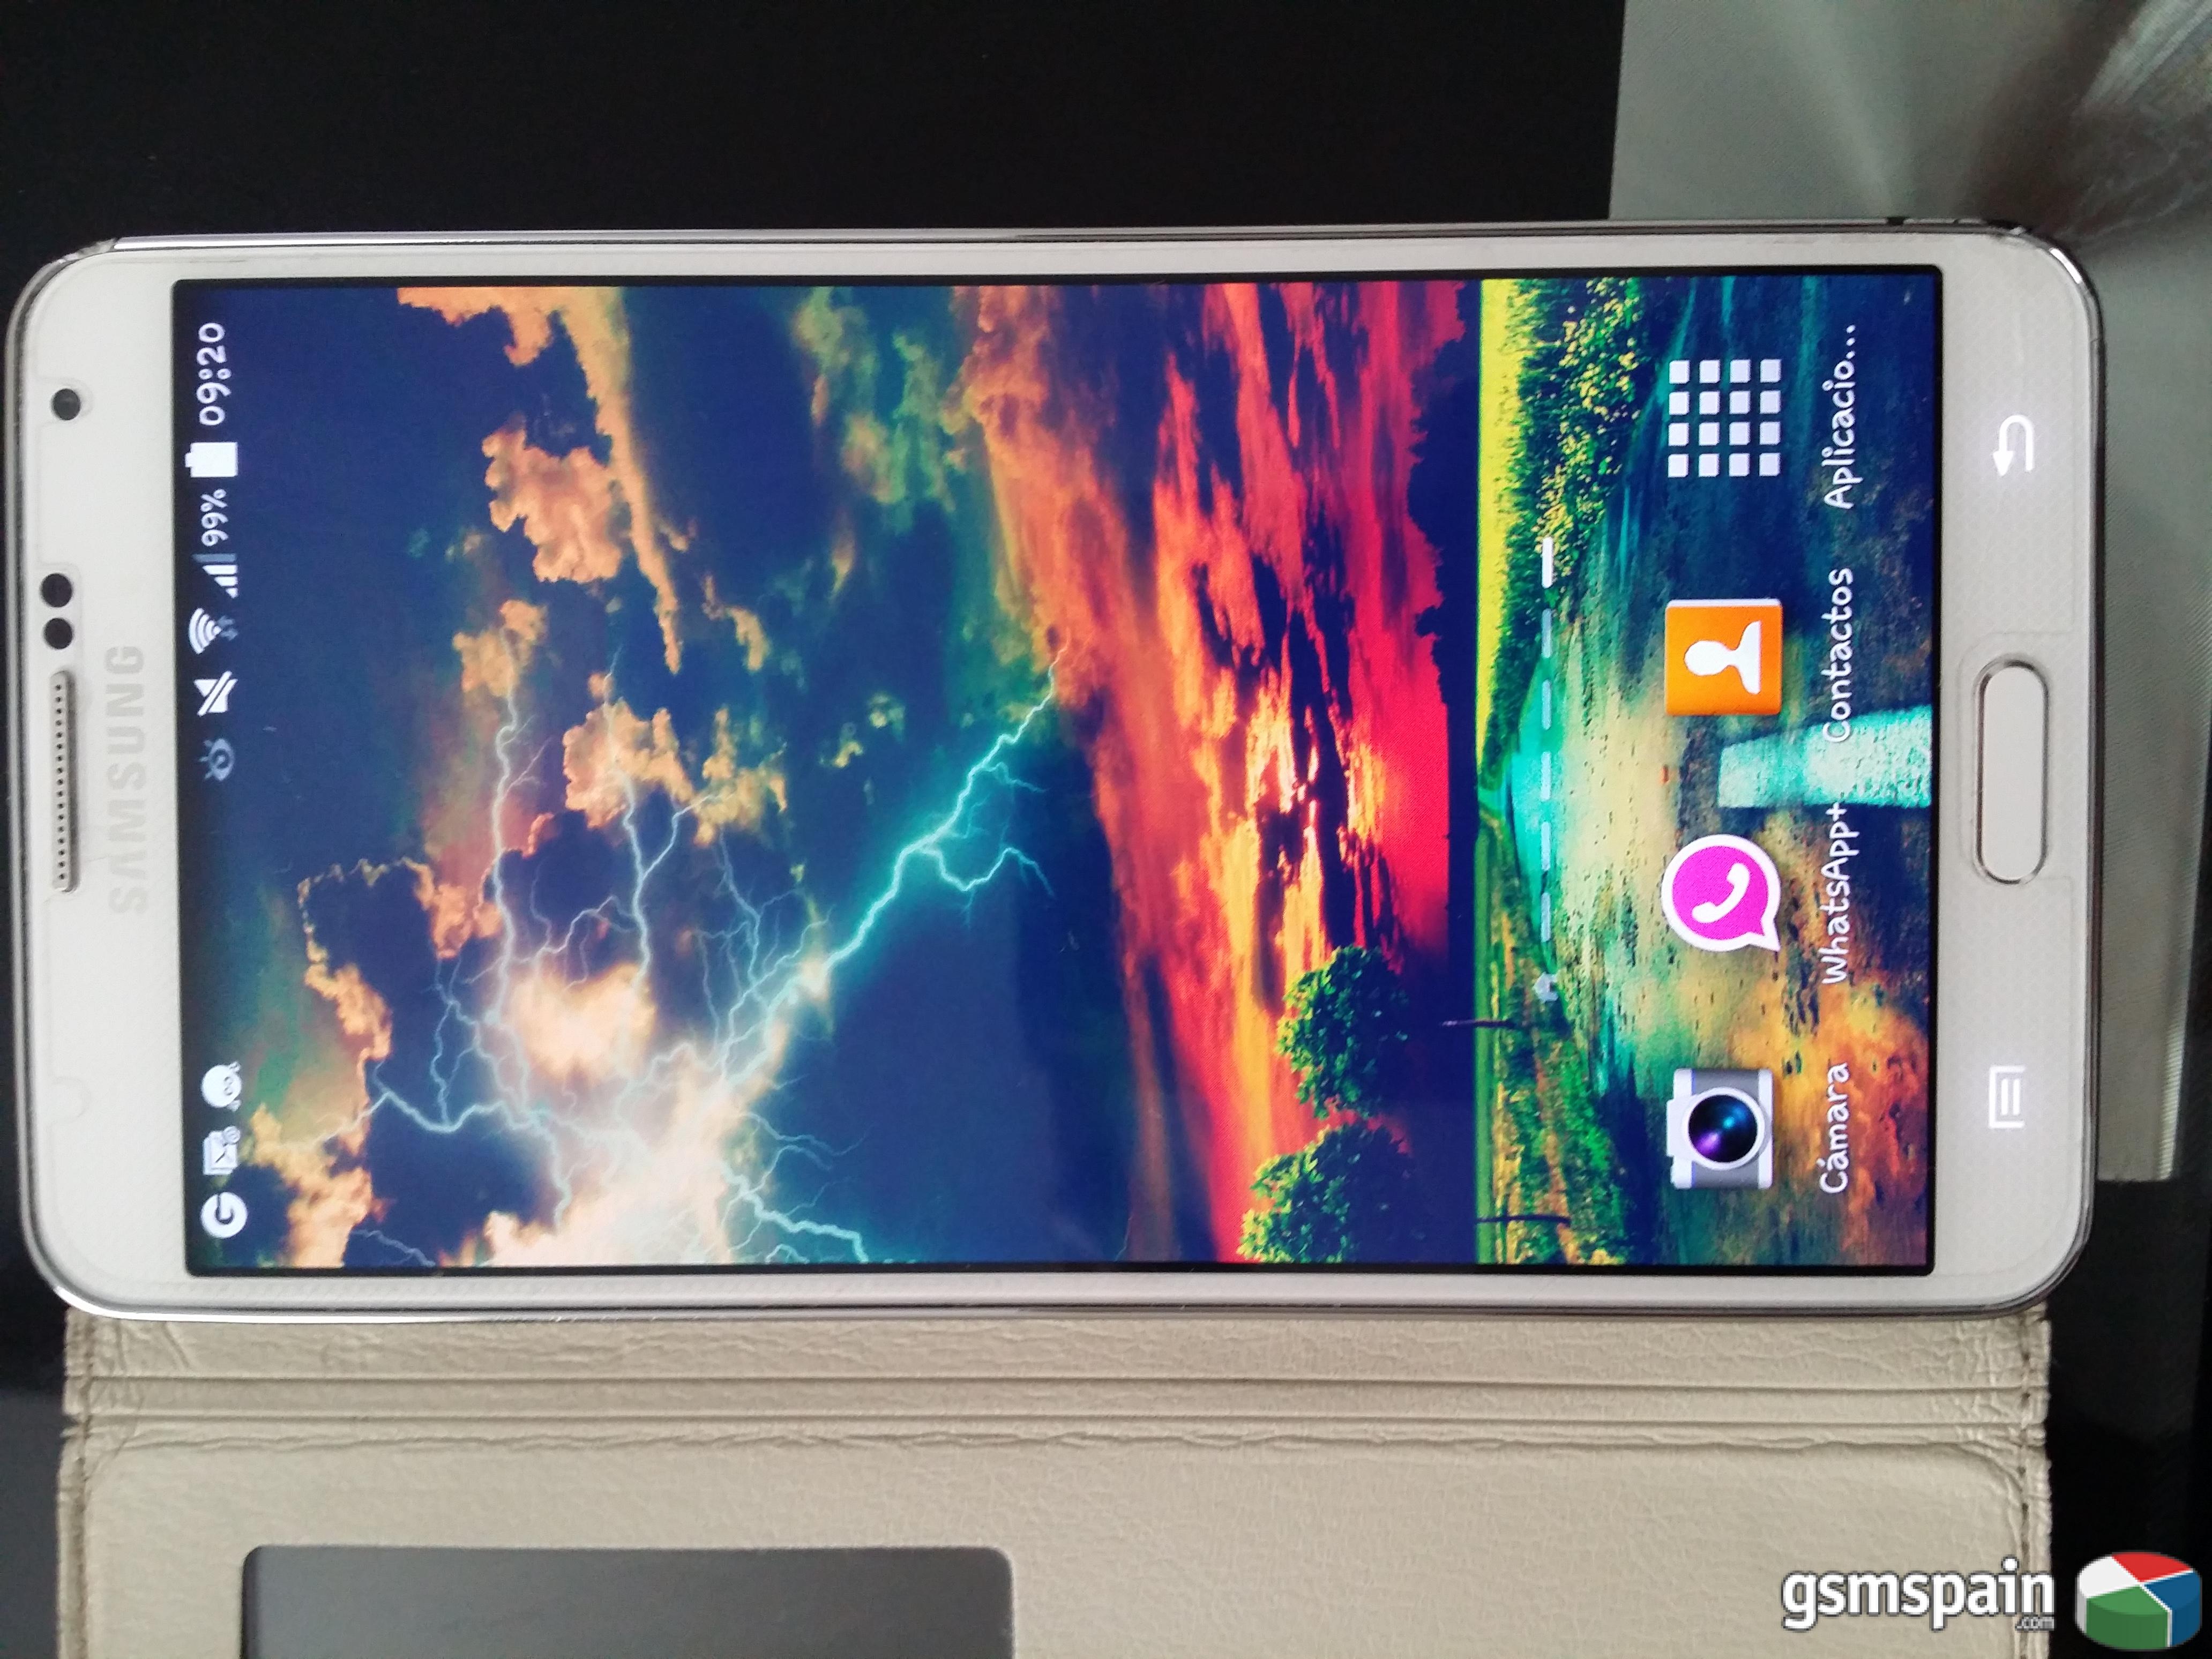 [VENDO] Galaxy Note 3 Blanco como Nuevo solo un golpe en marco con Garanta (VALENCIA)